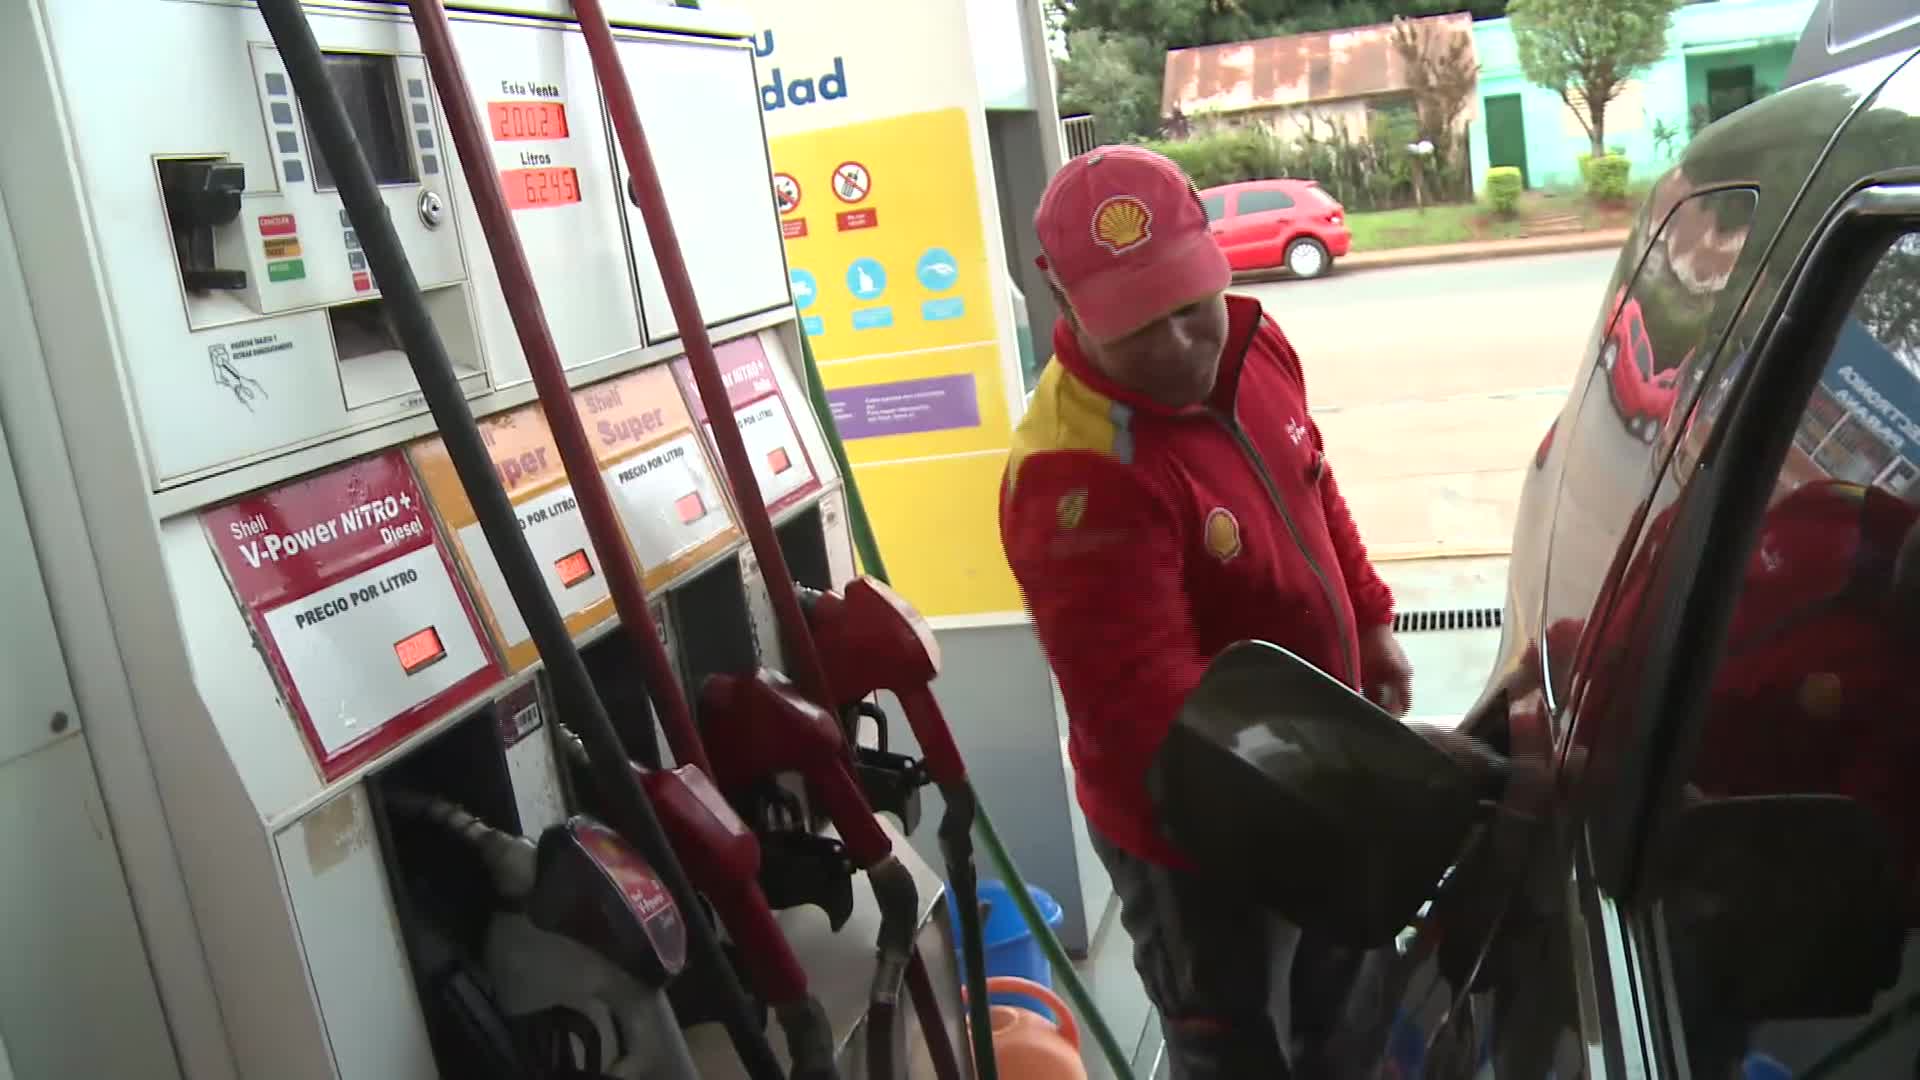 Escases de combustible en estaciones de servicio: apuntan a la presión de petroleras por subas